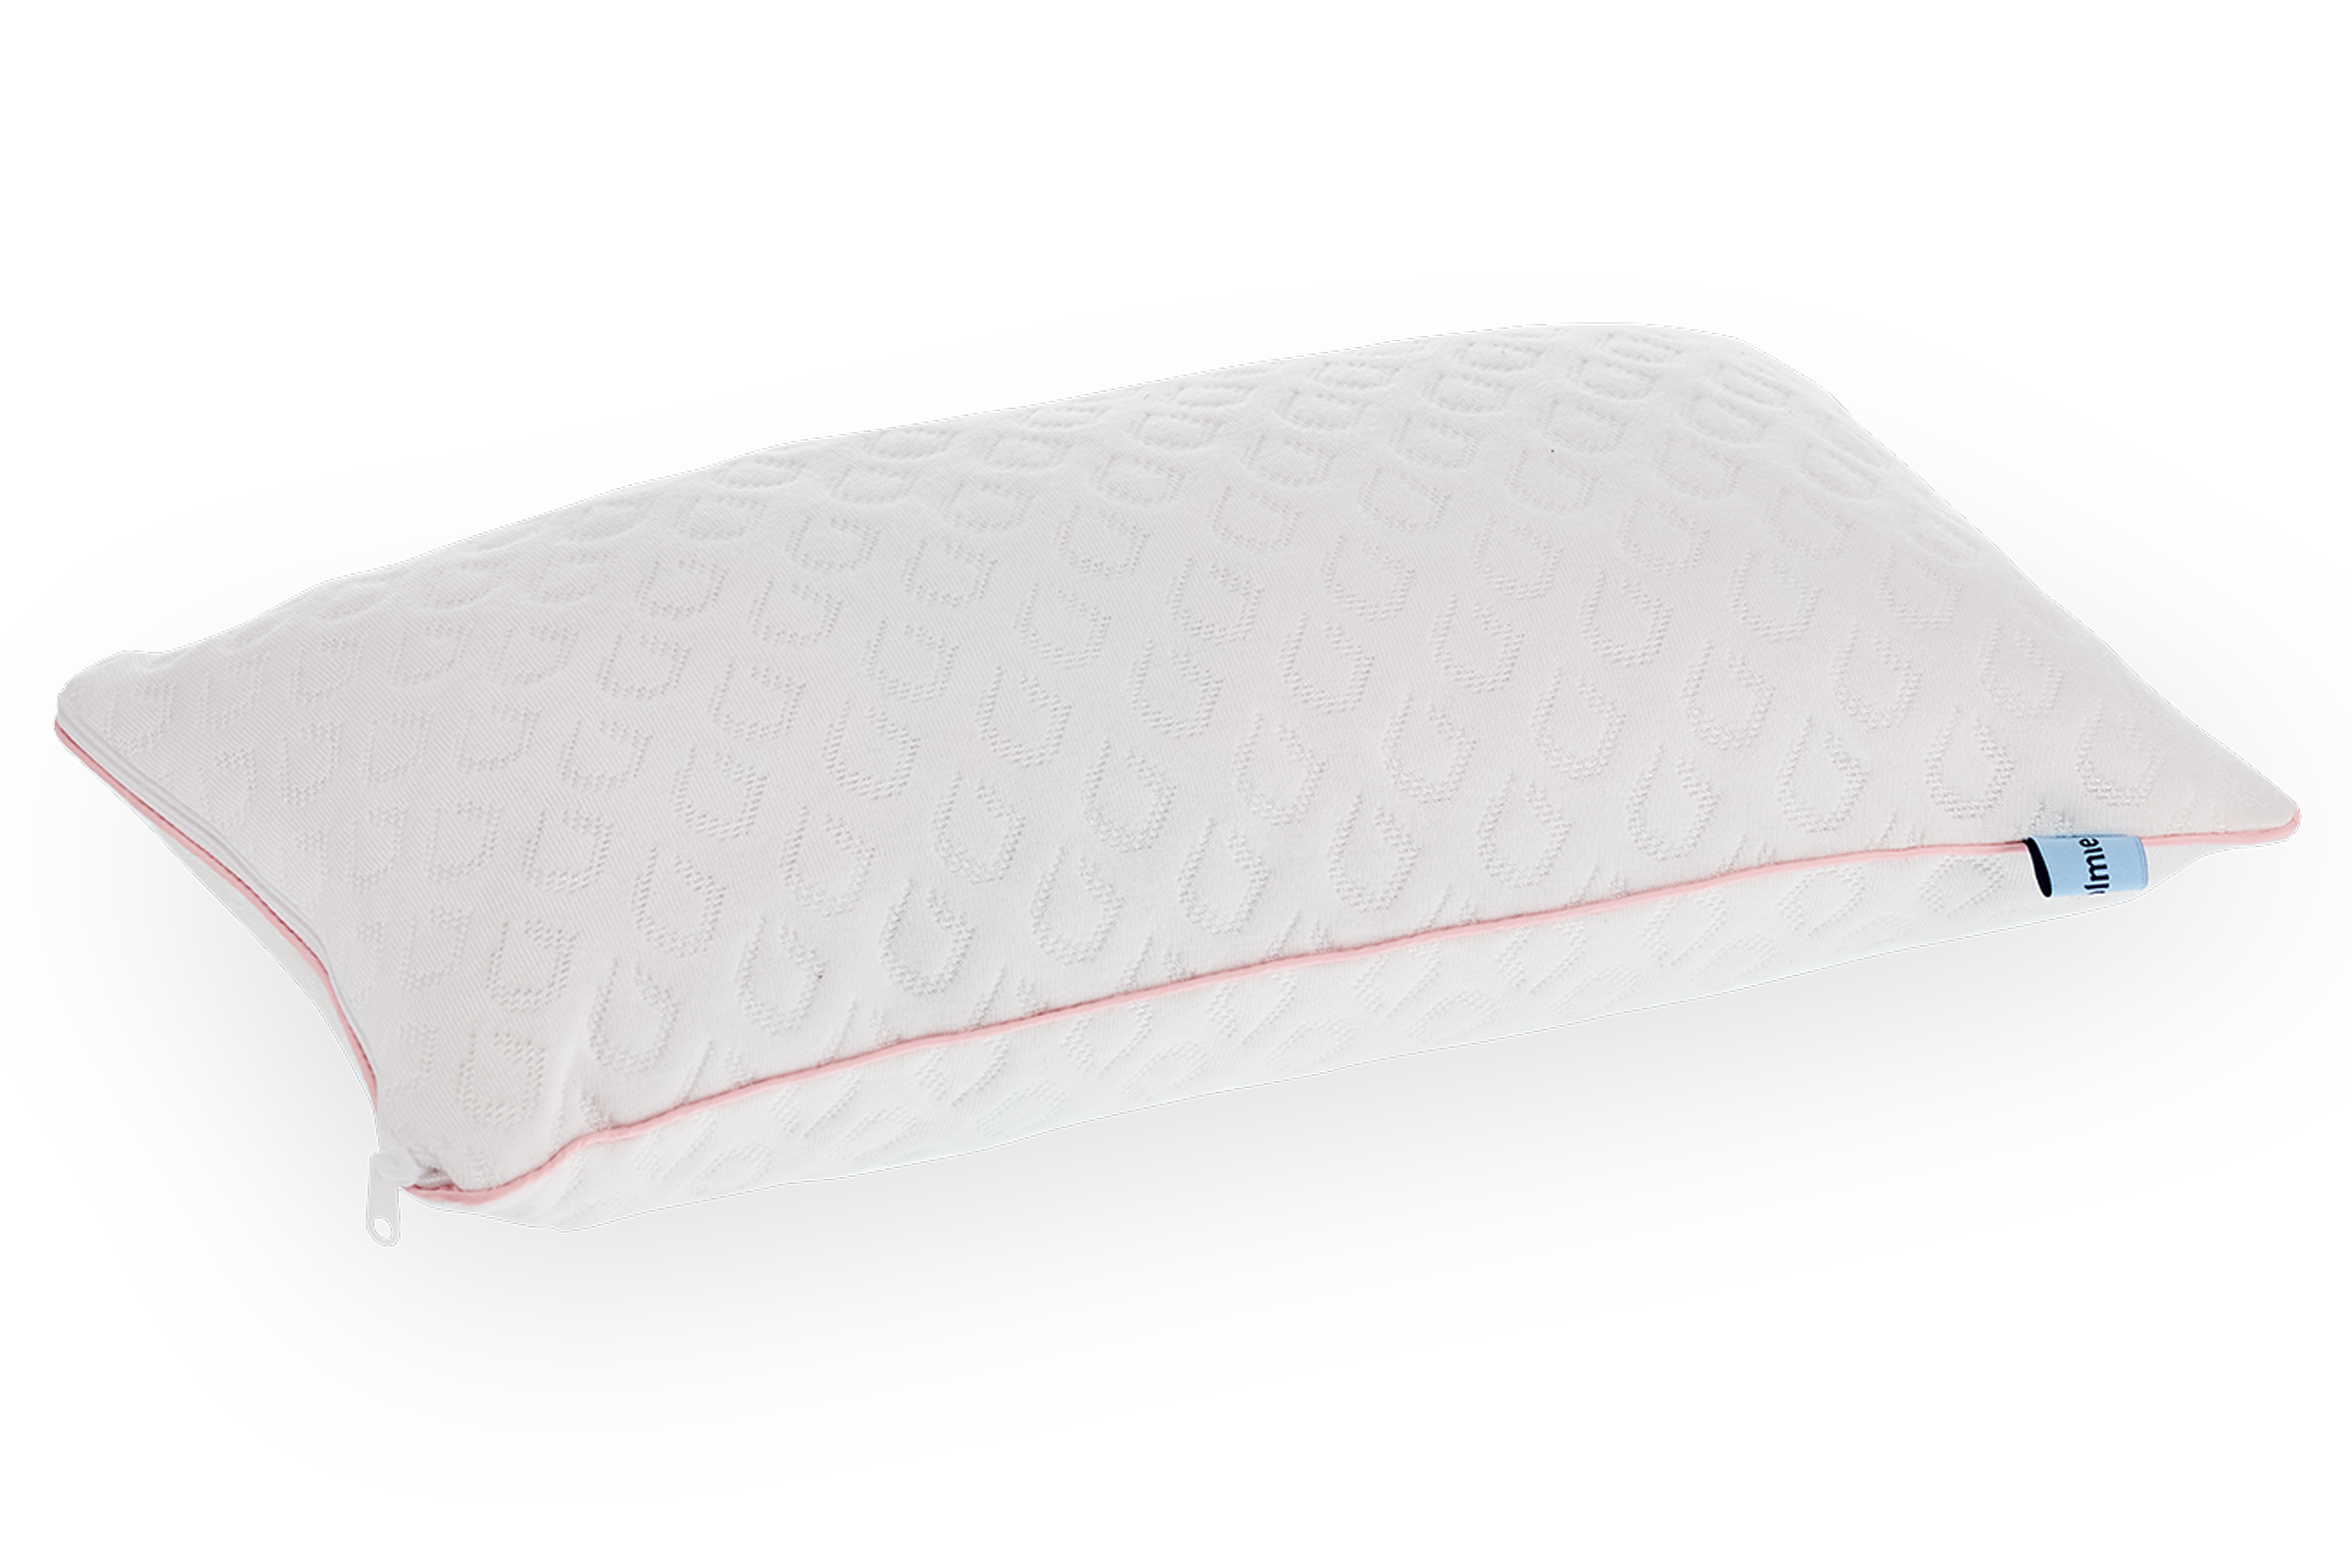 Benessere, comfort e sicurezza: il cuscino anti soffocamento con dettaglio rosa, personalizzabile e igienizzabile per bambine dai 0 ai 3 anni